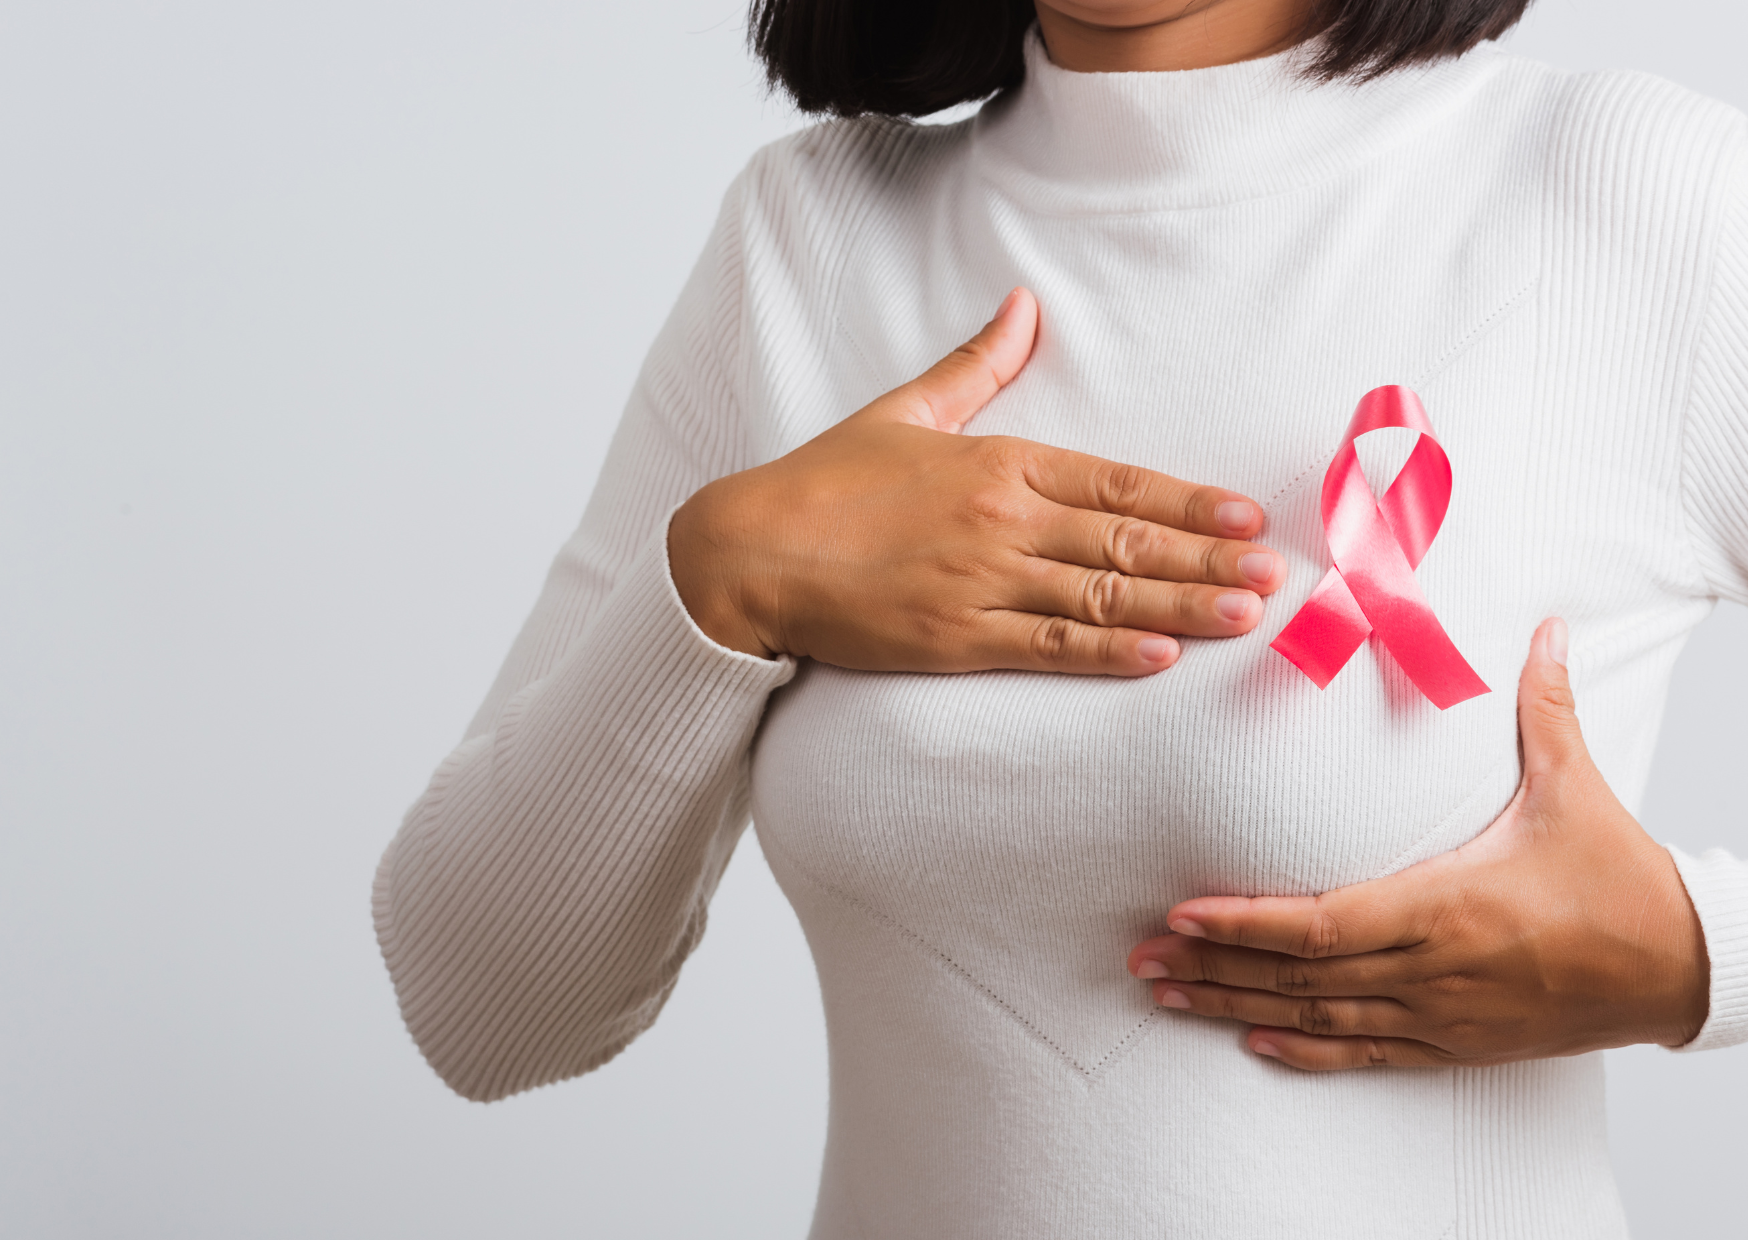 五分鐘守護乳房 「乳癌風險計算器」解析罹癌風險